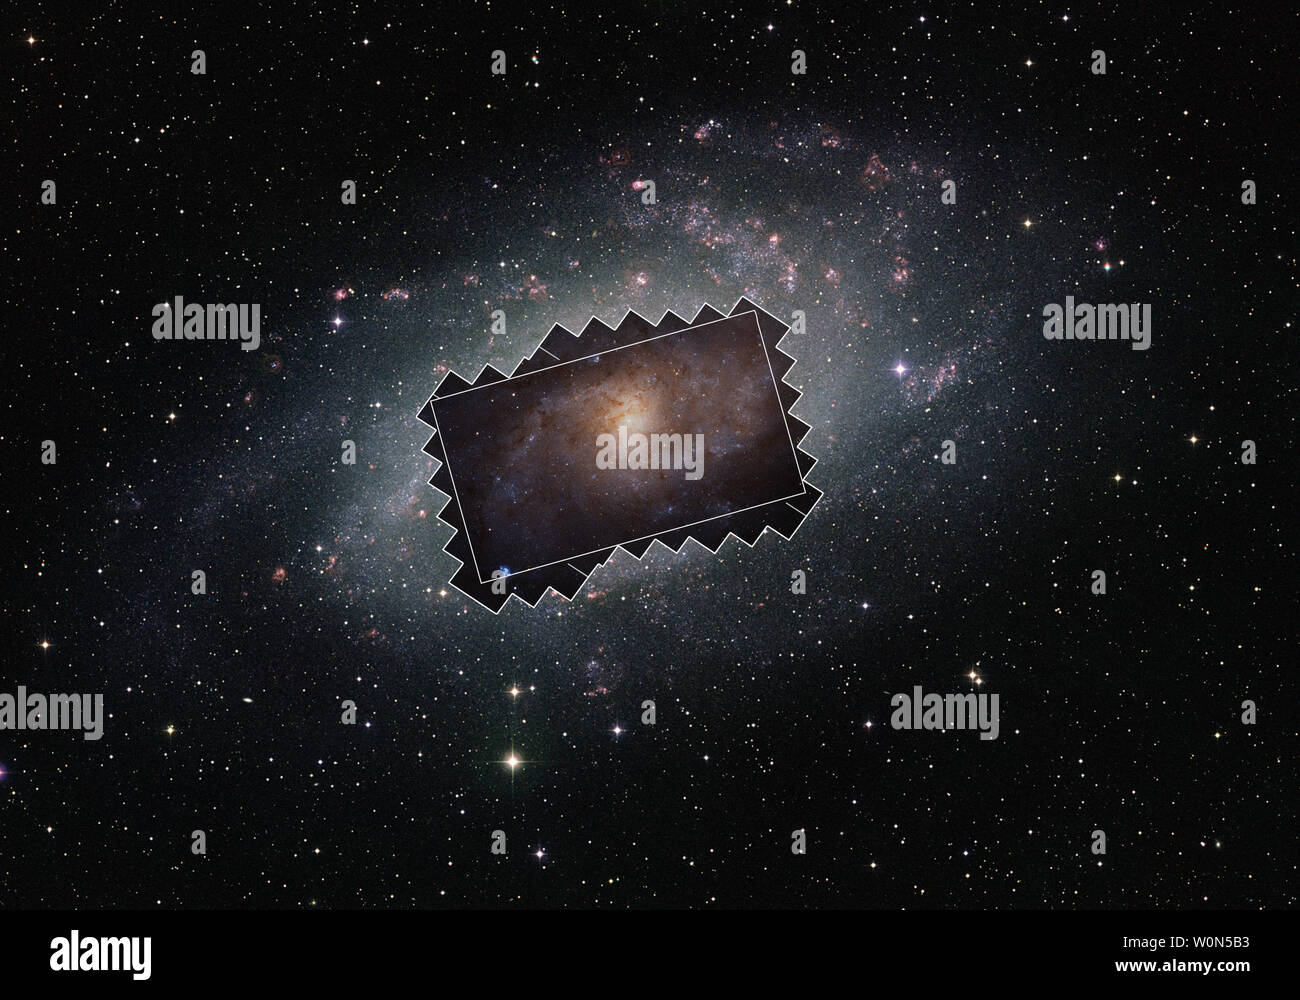 Cette vue à grand champ, publié le 7 janvier 2019, montre la Galaxie Triangulum - également connu sous le nom de Messier 33 - vu de la terre. La mesure de la nouvelle immense mosaïque créé avec la NASA/ESA Hubble Space Telescope est illustré par la région de forme irrégulière et de l'image principale présentée ici par le rectangle à l'intérieur. Photo de la NASA/ESA/UPI Banque D'Images